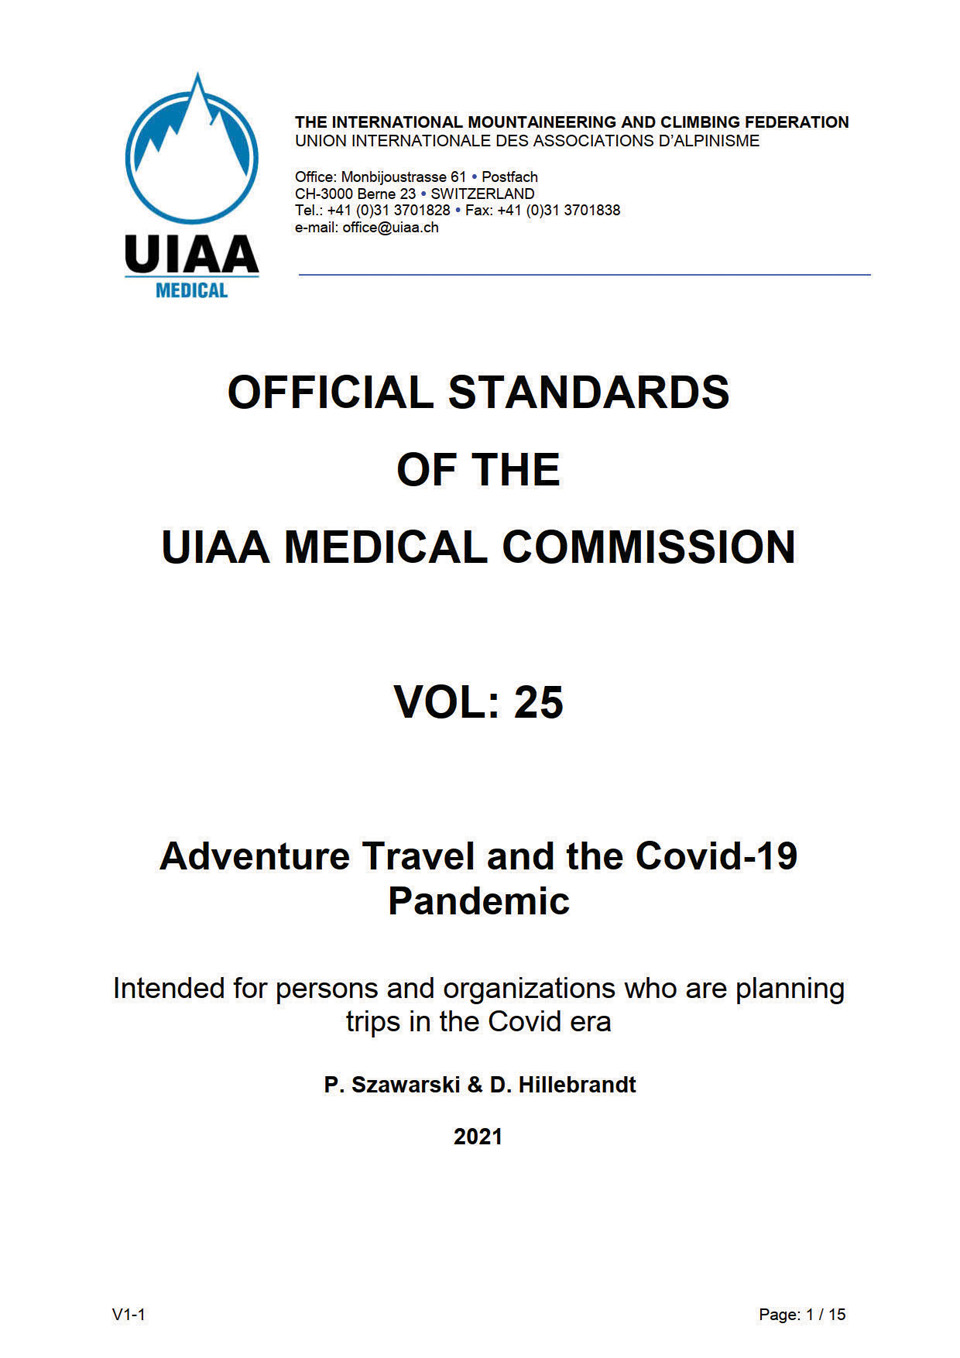 국제산악연맹 의학위원회가 모험 여행과 코로나19라는 보고서를 발표했다.